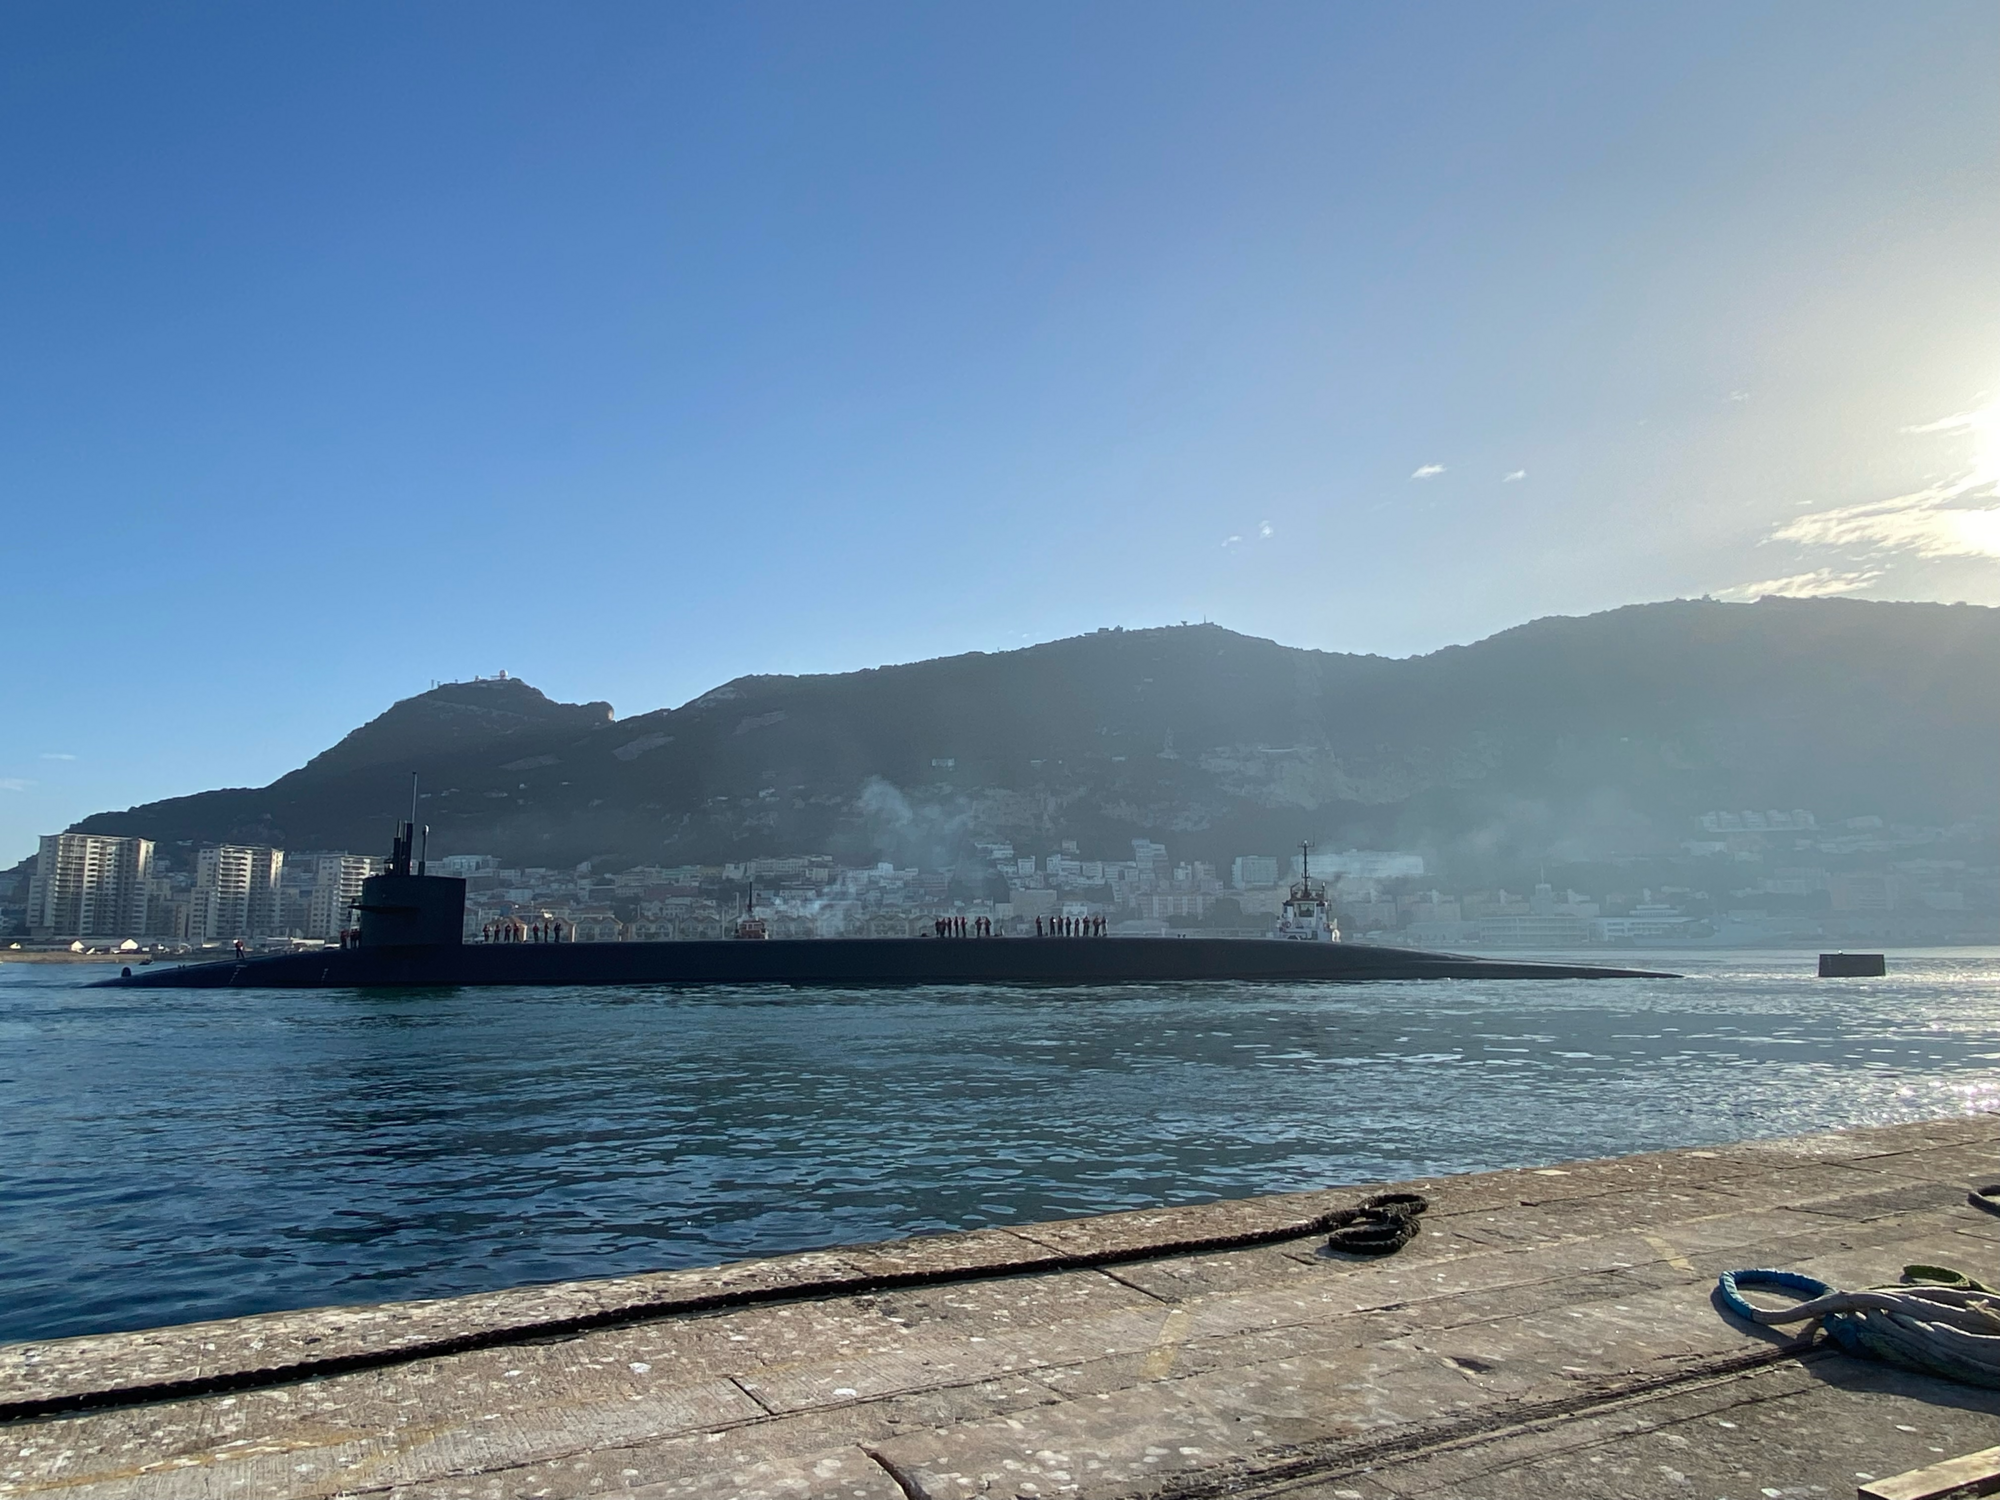 "Послання" для Путіна: в Середземне море зайшов атомний підводний човен USS Rhode Island із ракетами Trident. Фото та відео 